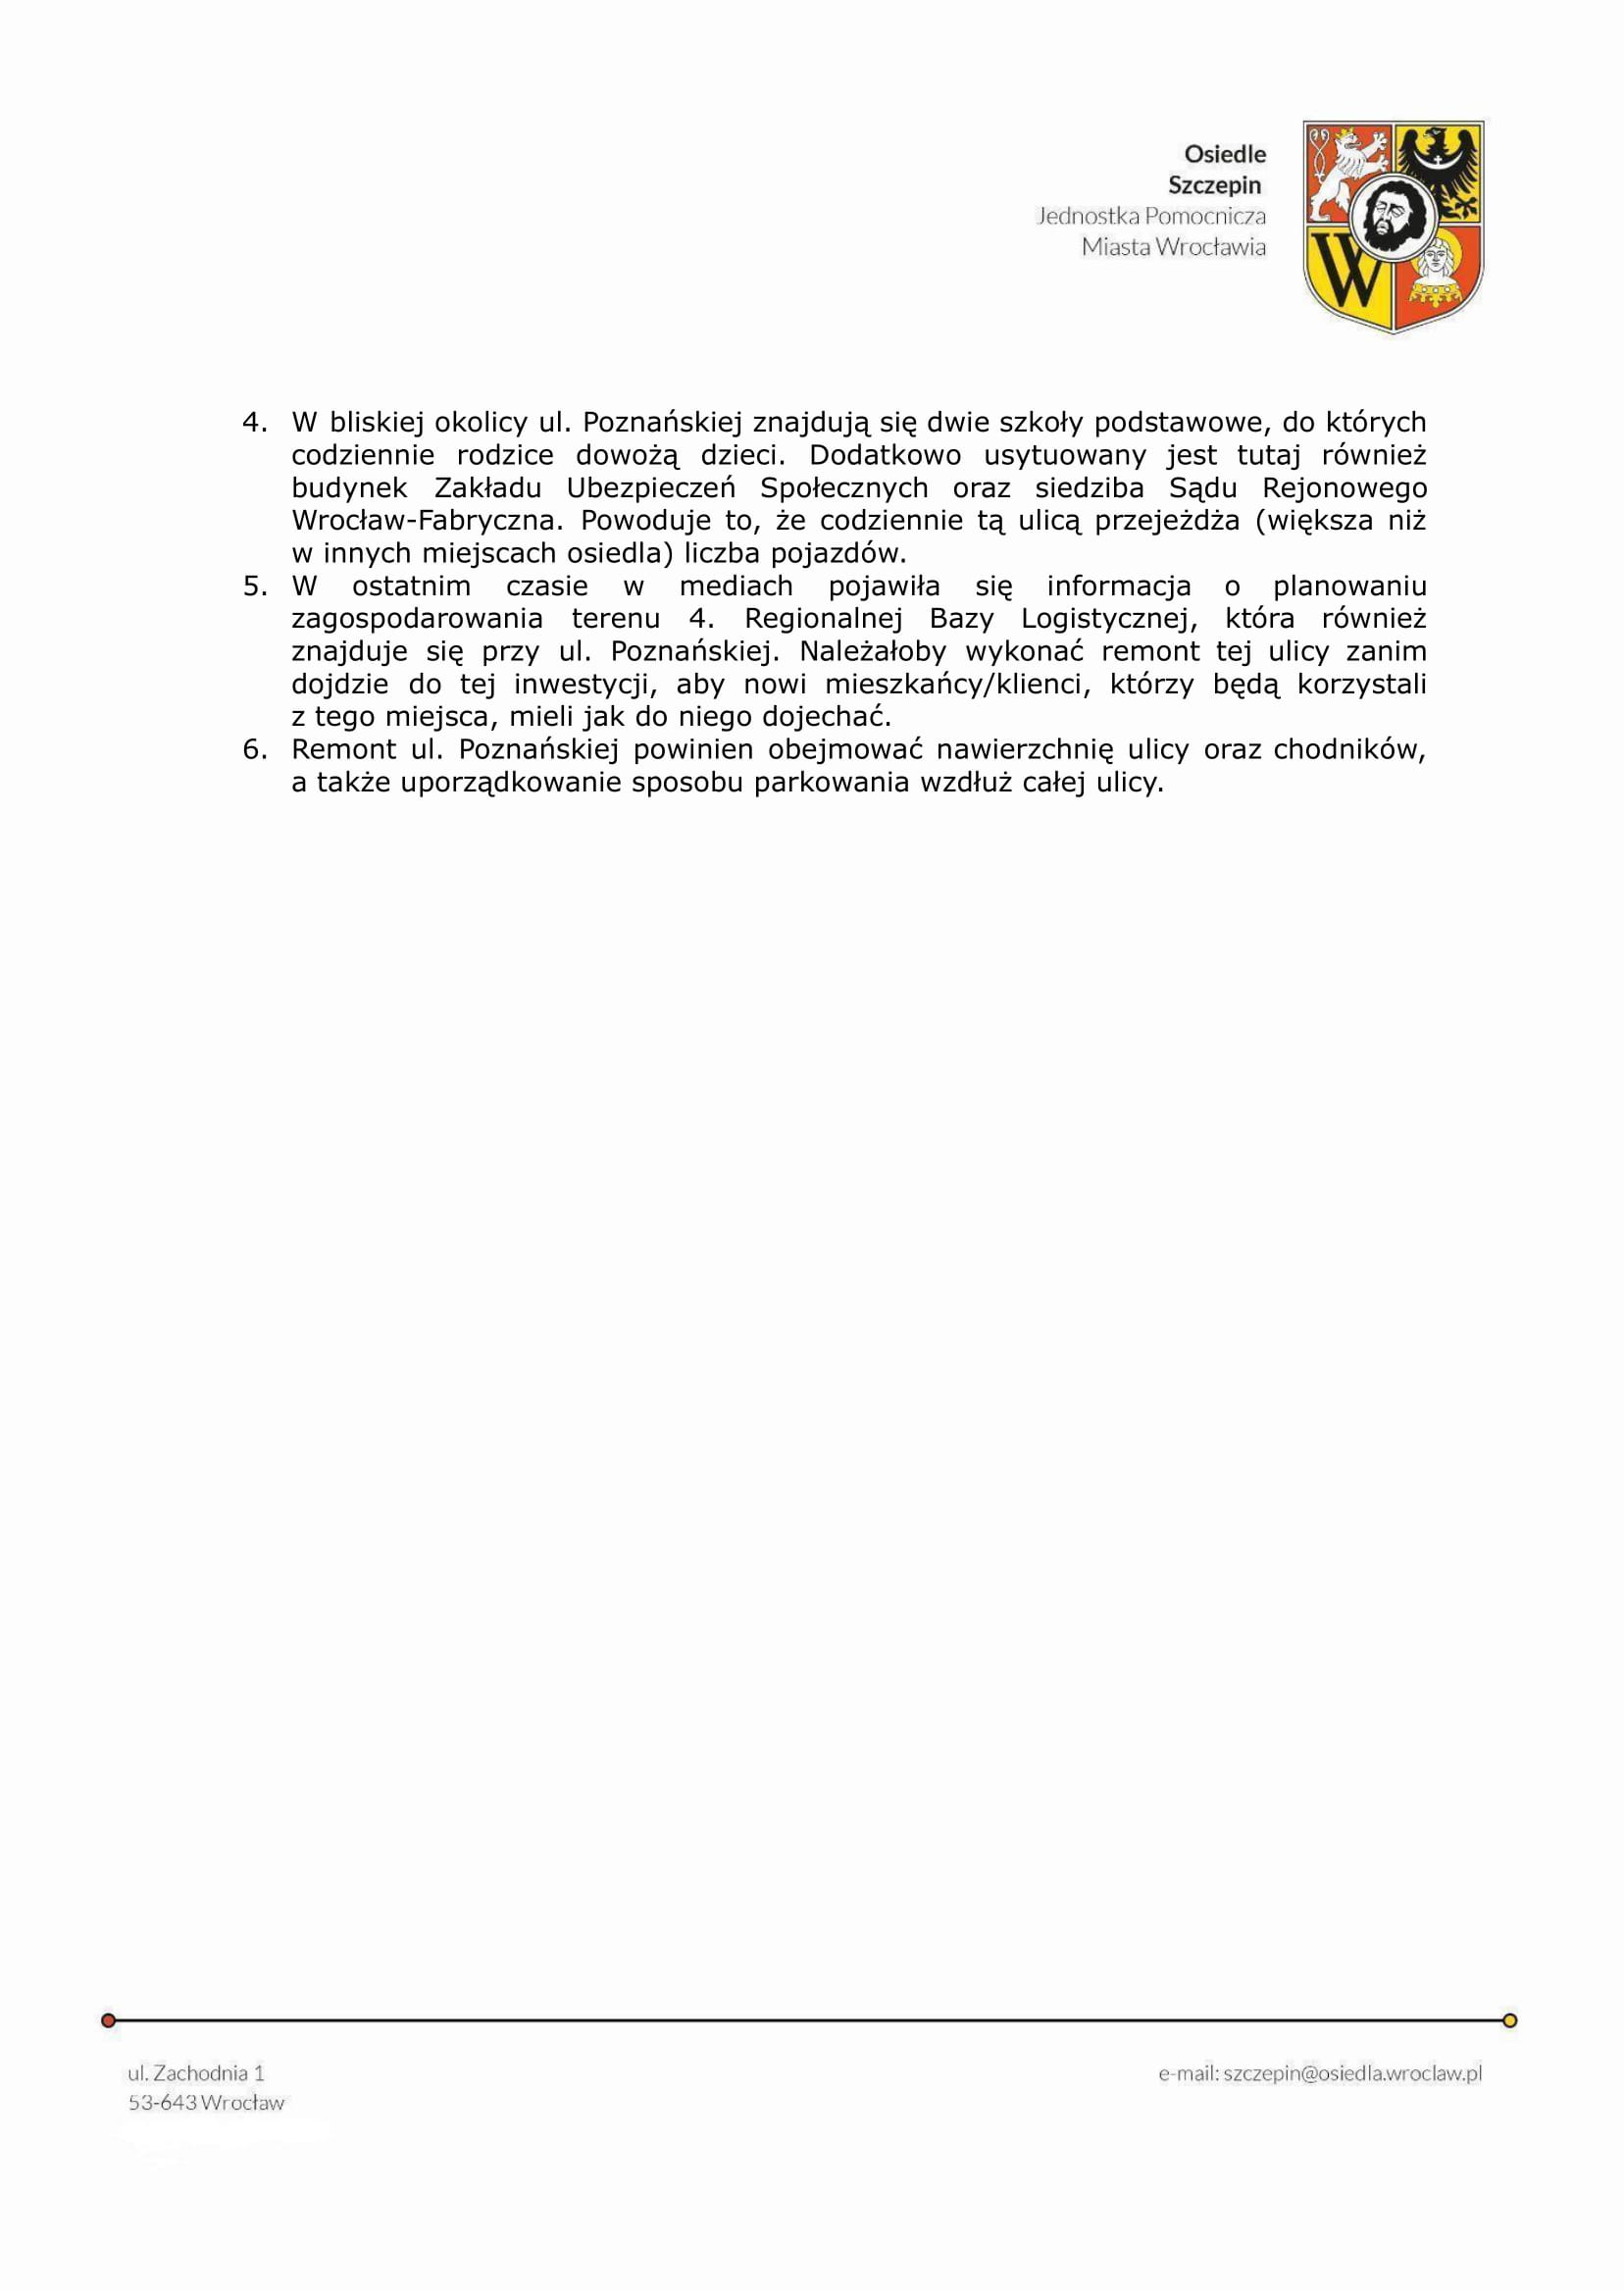 Uchwała VI 43 22 W sprawie wniosku o remont Poznanskiej.docx 2